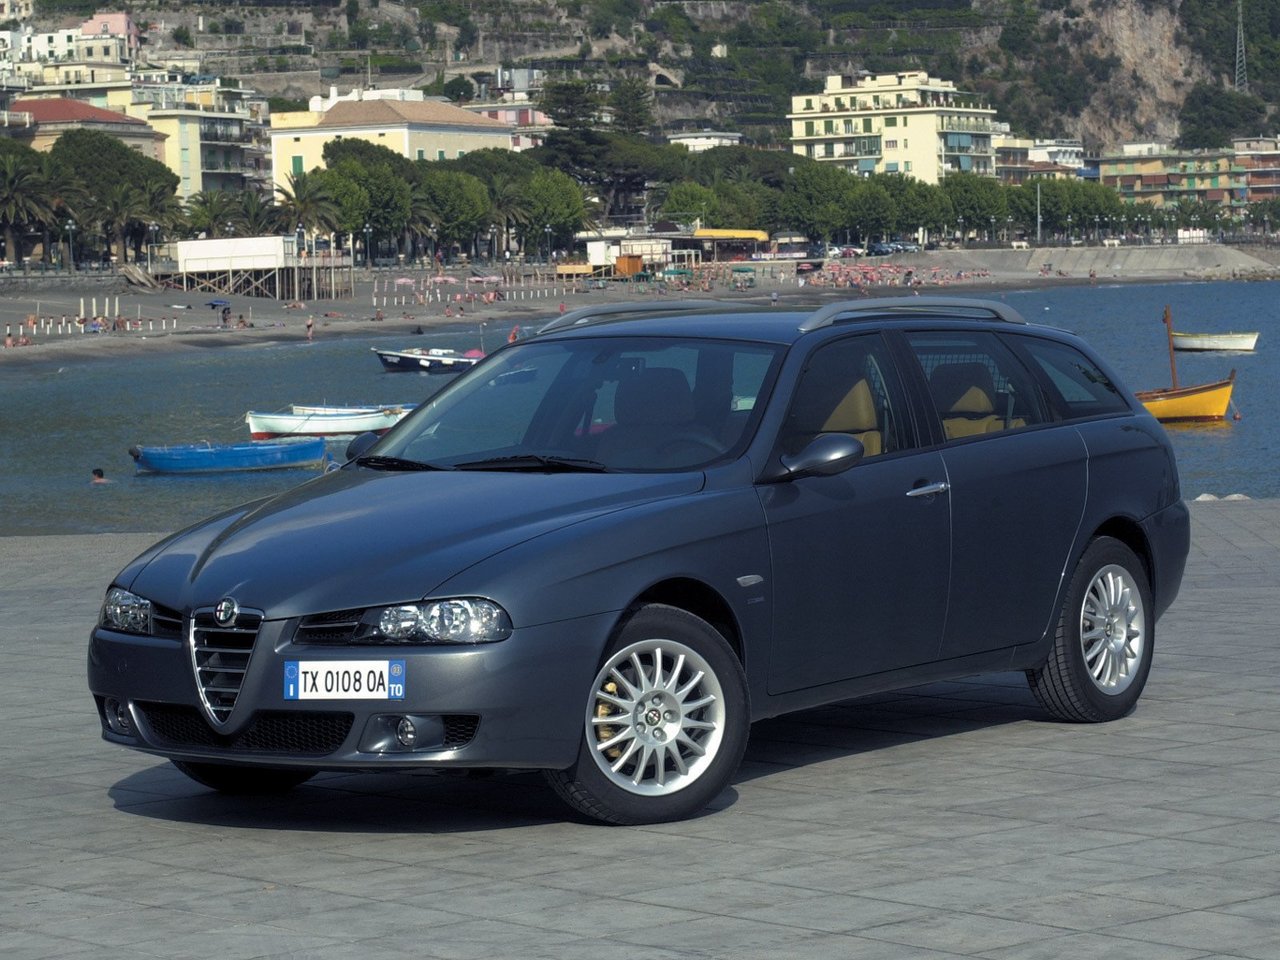 Расход газа восьми комплектаций универсала пять дверей Alfa Romeo 156. Разница стоимости заправки газом и бензином. Автономный пробег до и после установки ГБО.